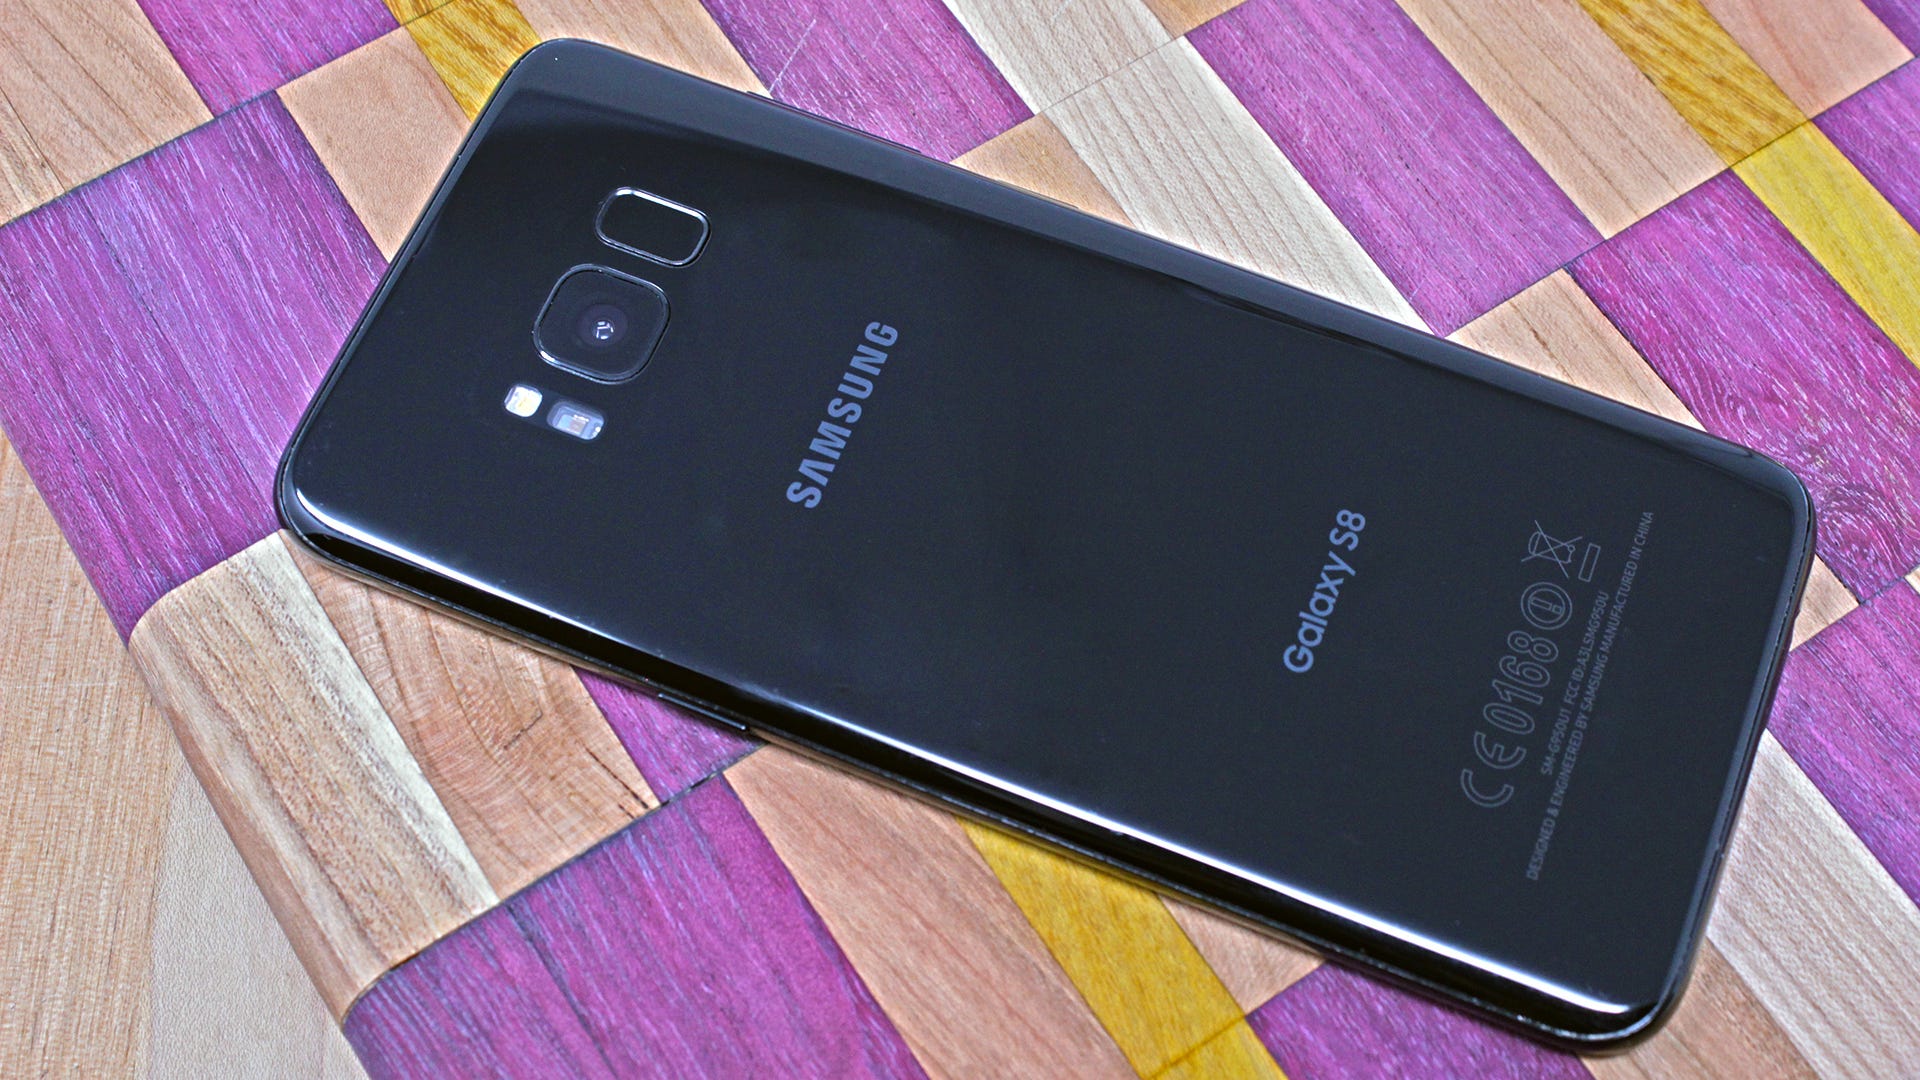 Samsung Galaxy S8 trên nền gỗ kẻ sọc màu tím